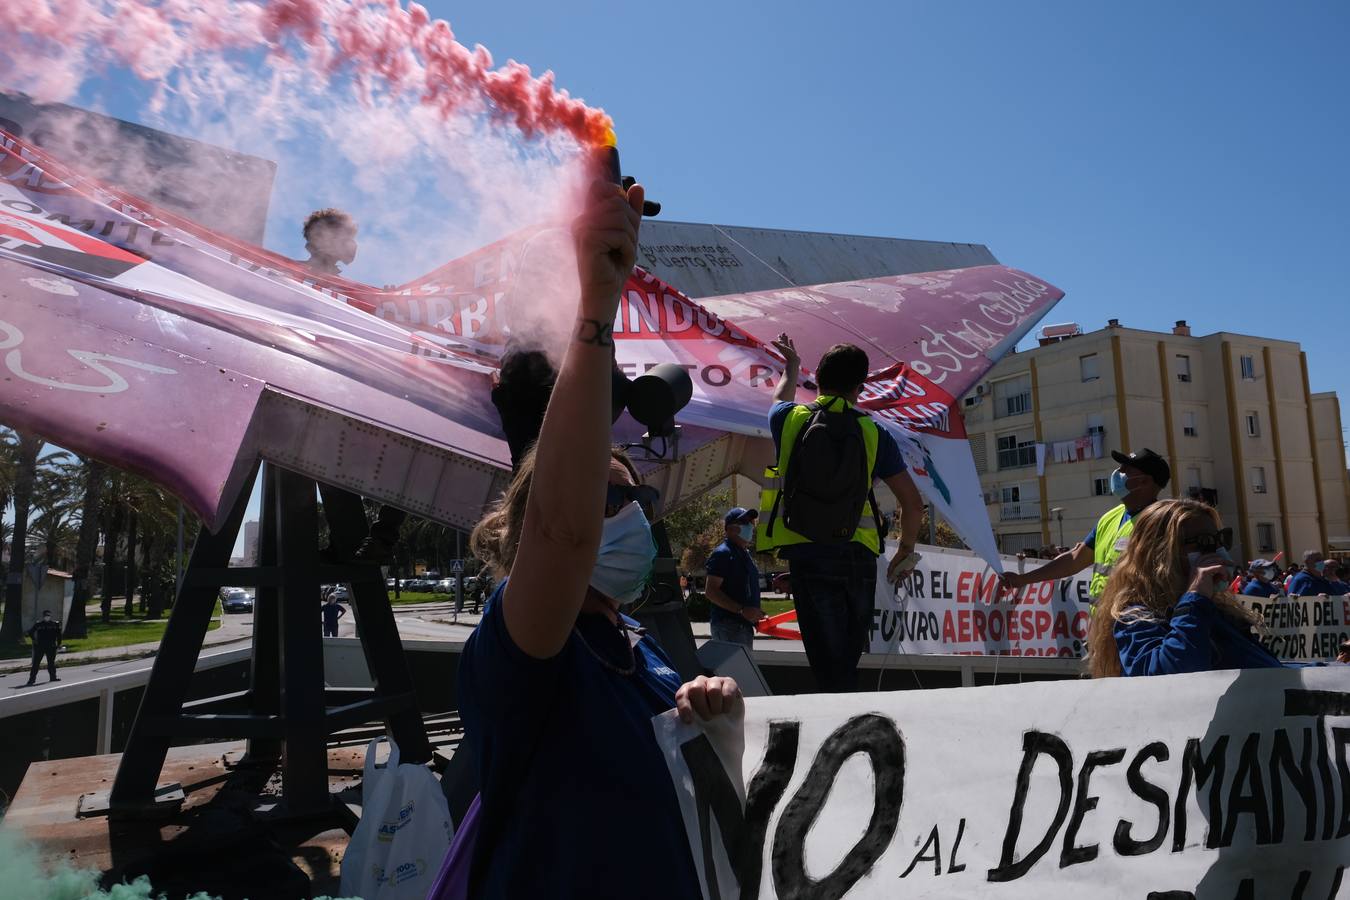 FOTOS: Manifestación de Airbus Puerto Real